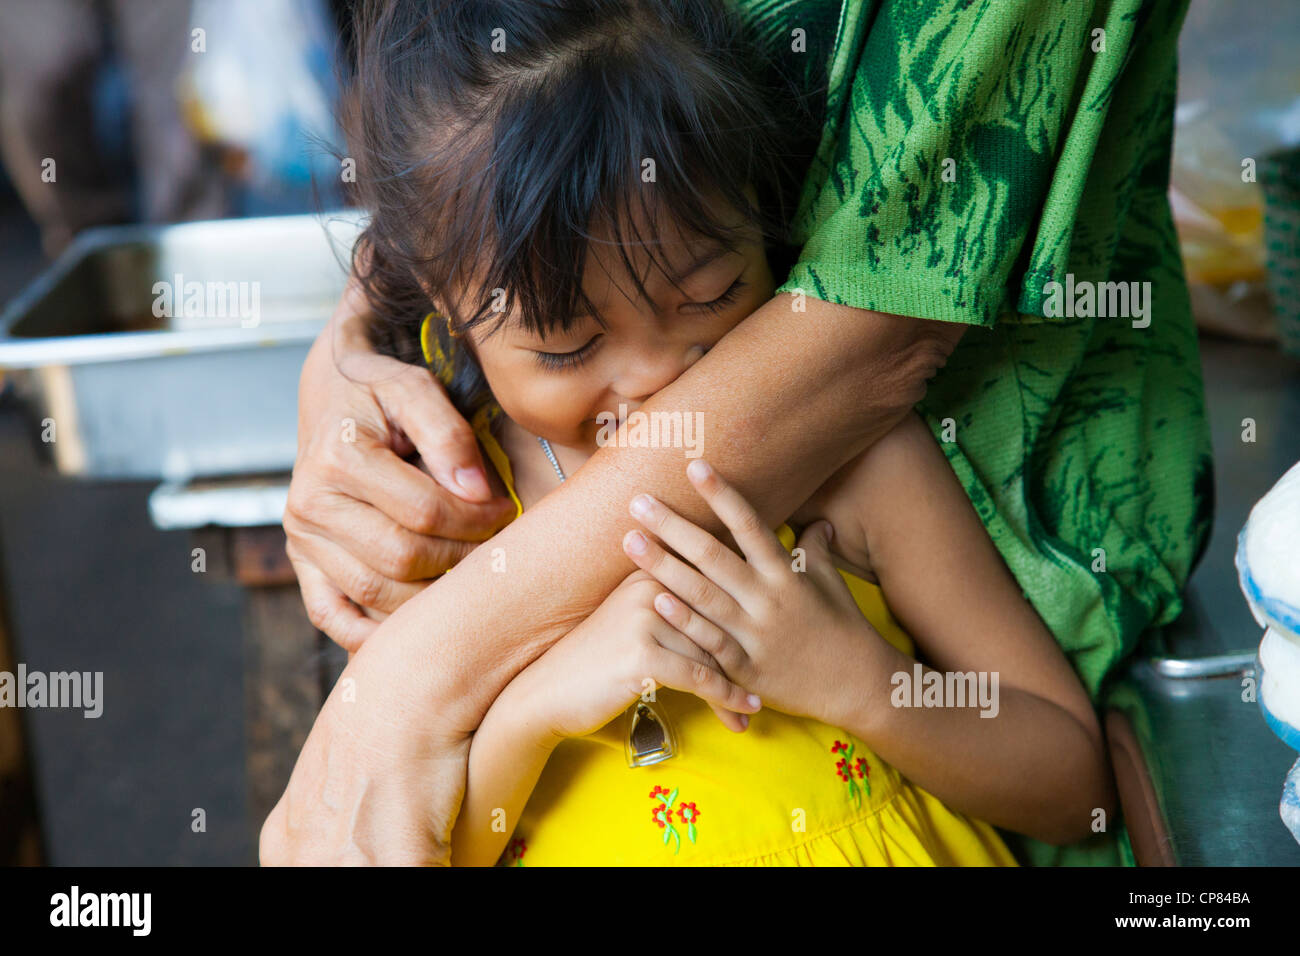 Jeune fille thaïe à Bangkok, Thaïlande Banque D'Images